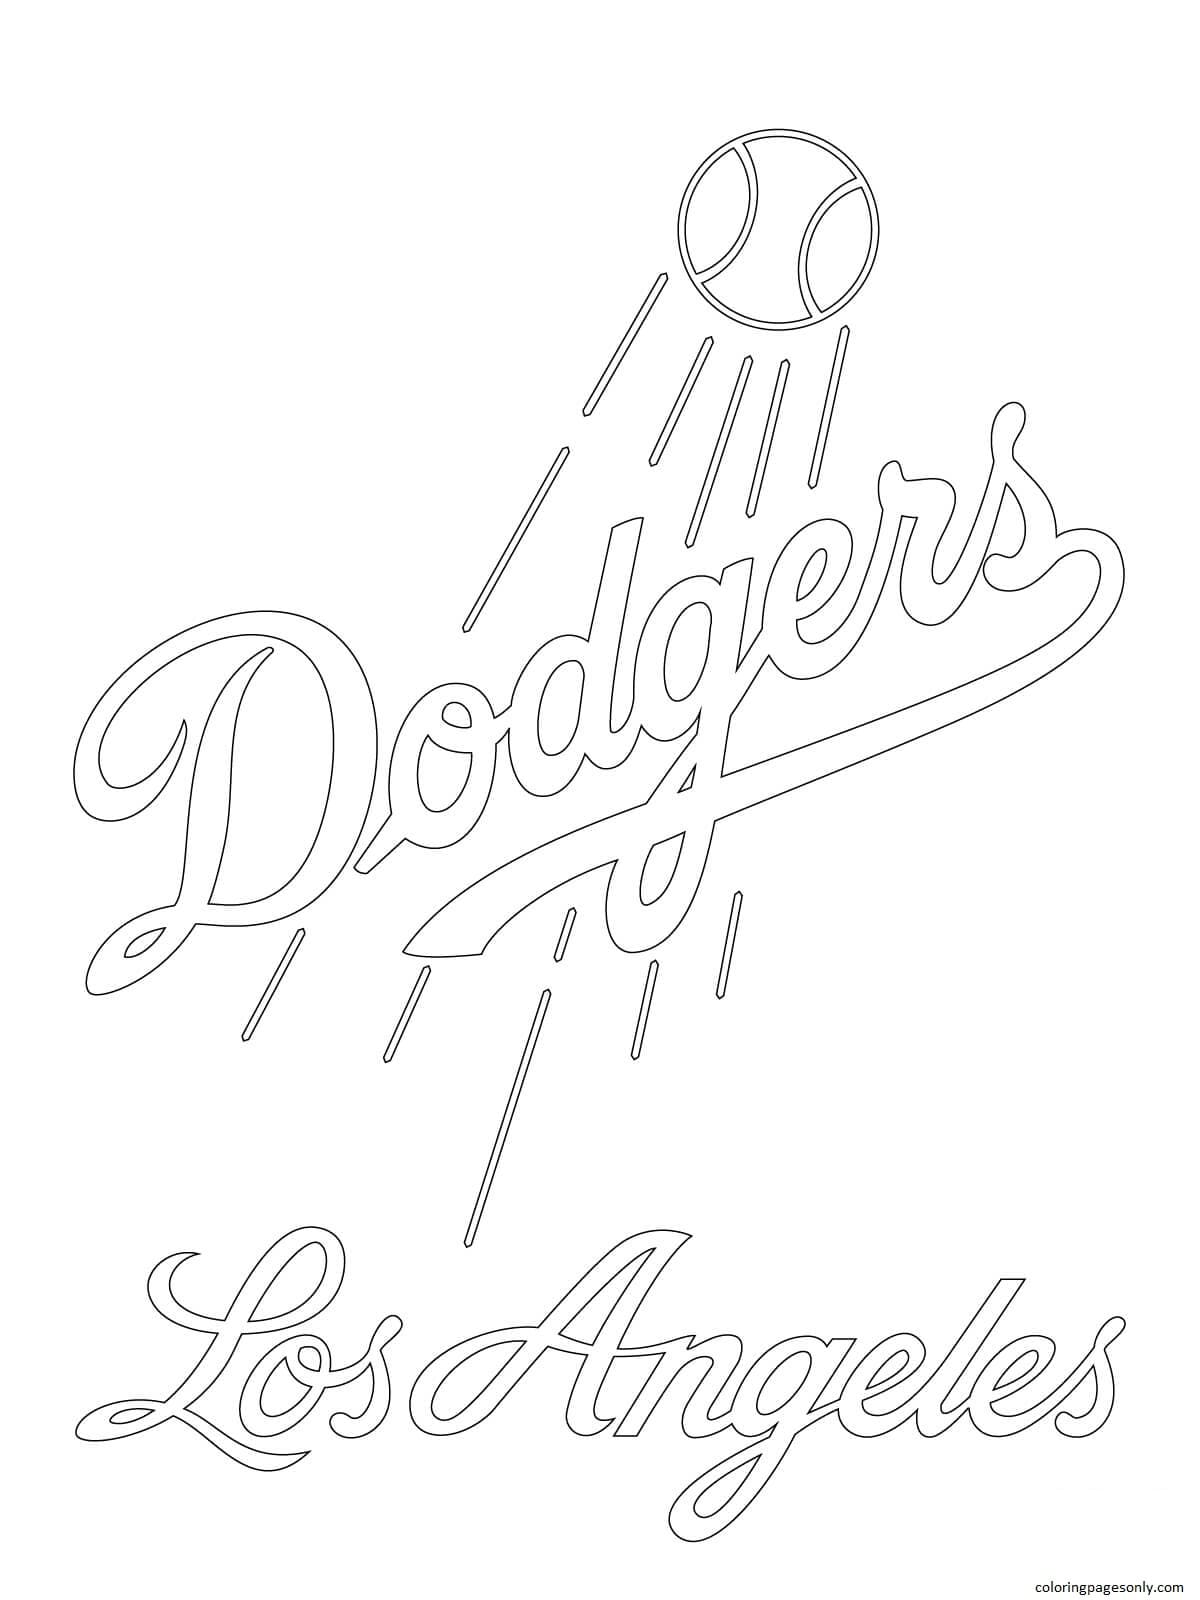 Página para colorir do logotipo do Los Angeles Dodgers